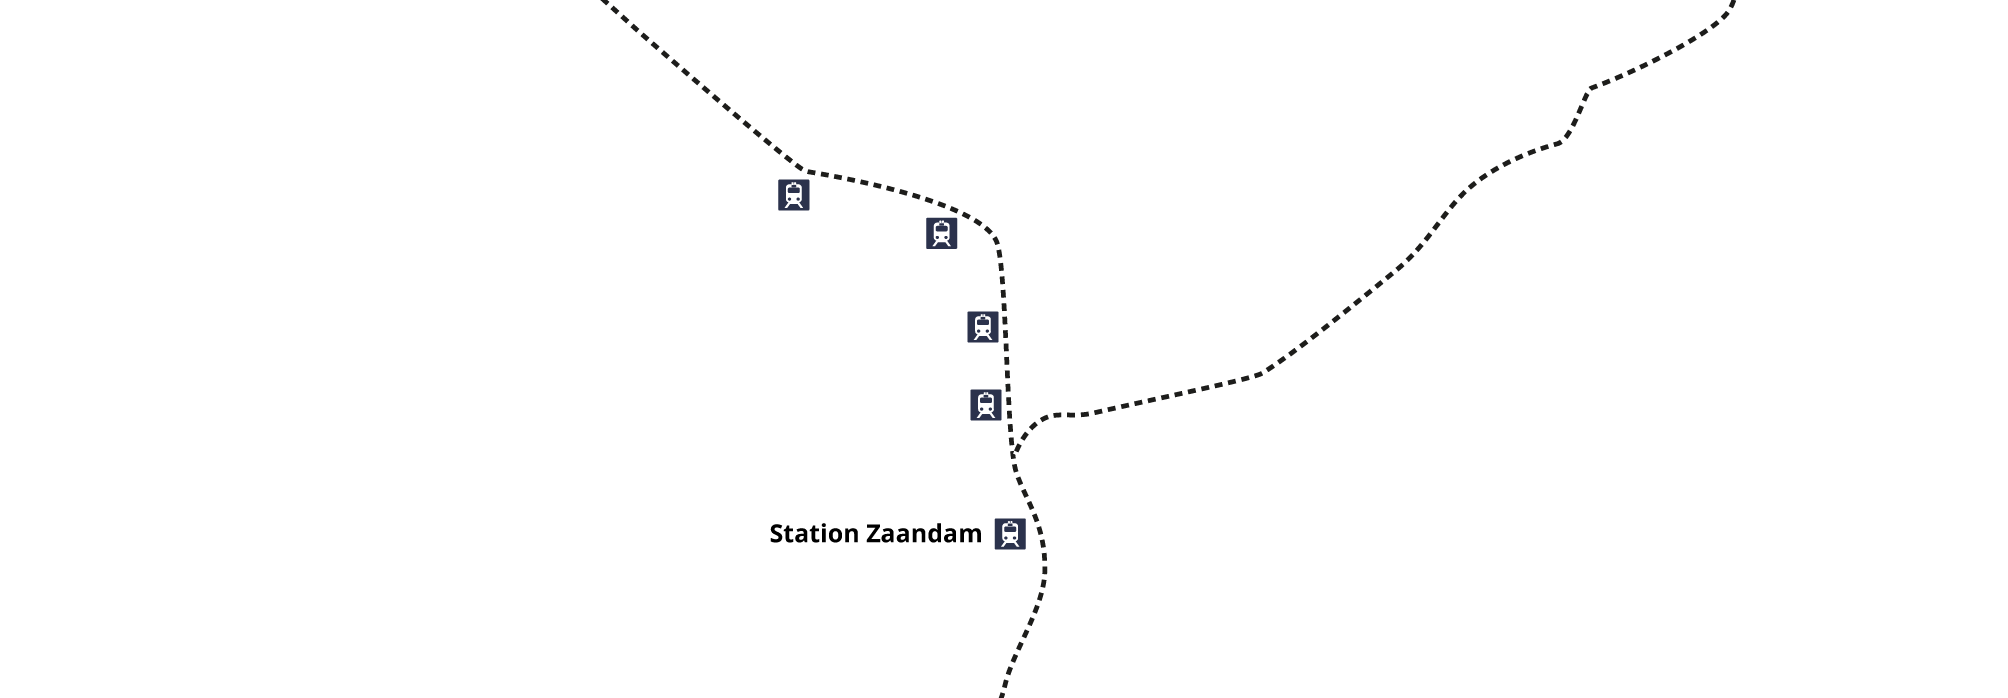 Treinsporen Zaanstad